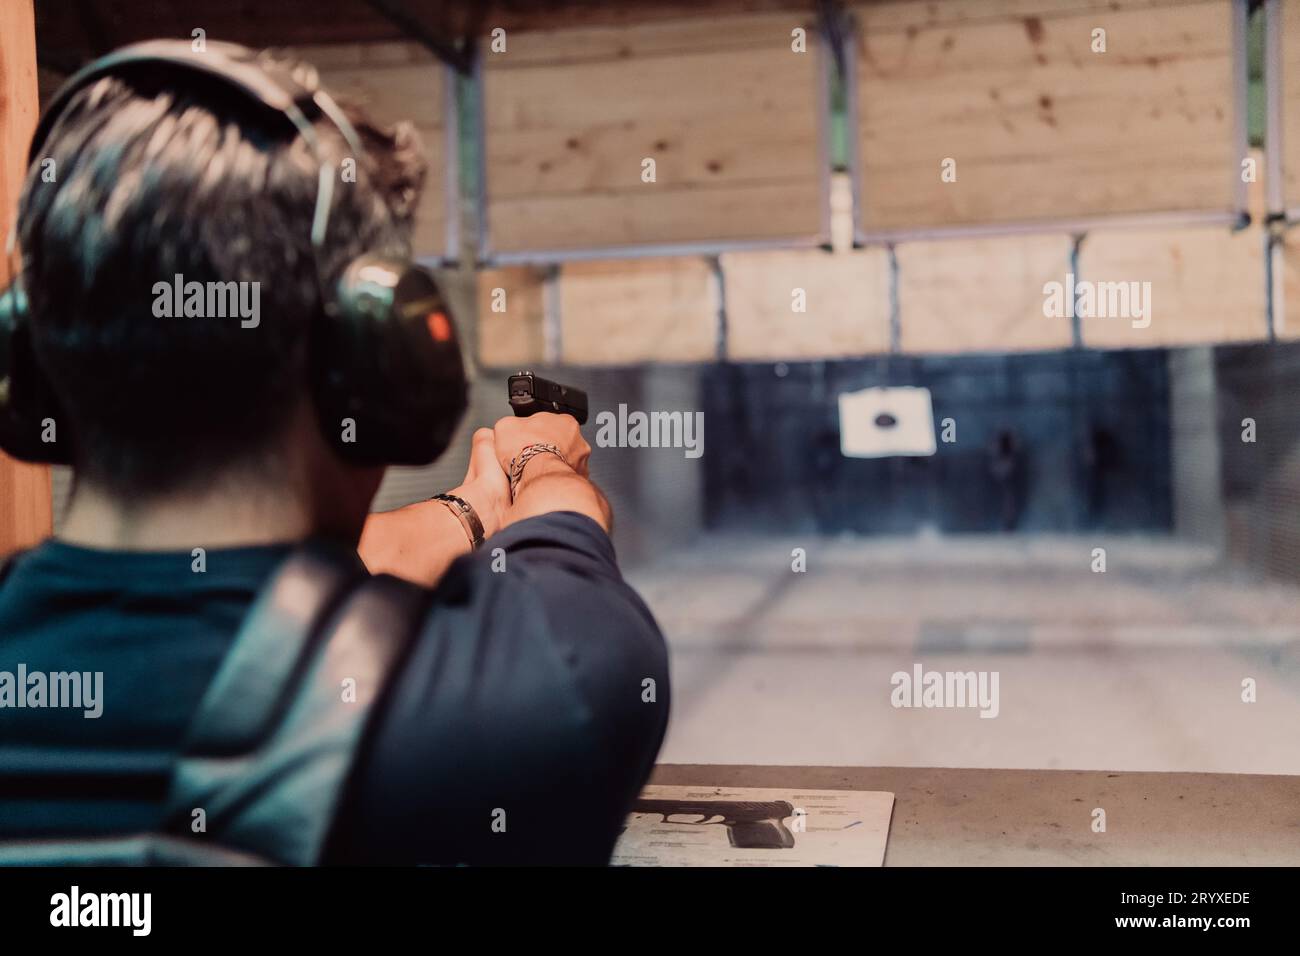 Un homme pratique le tir d'un pistolet dans une gamme de tir tout en portant des écouteurs de protection Banque D'Images